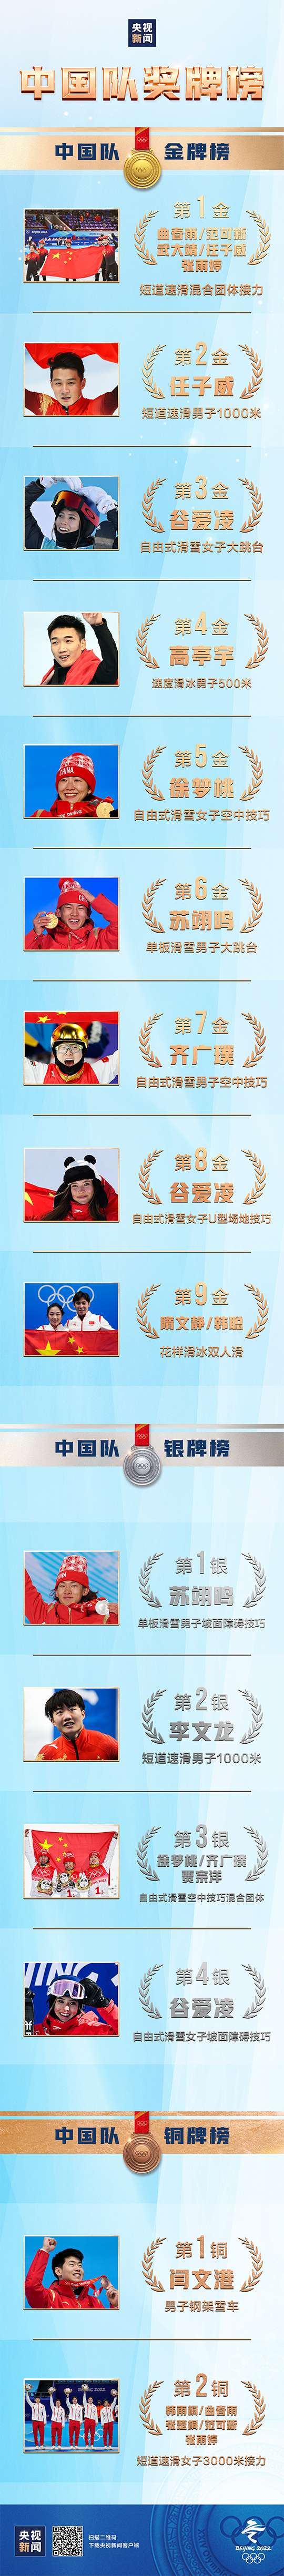 祝贺！中国队位列奖牌榜第三位 金牌数、奖牌数均创历史最好成绩